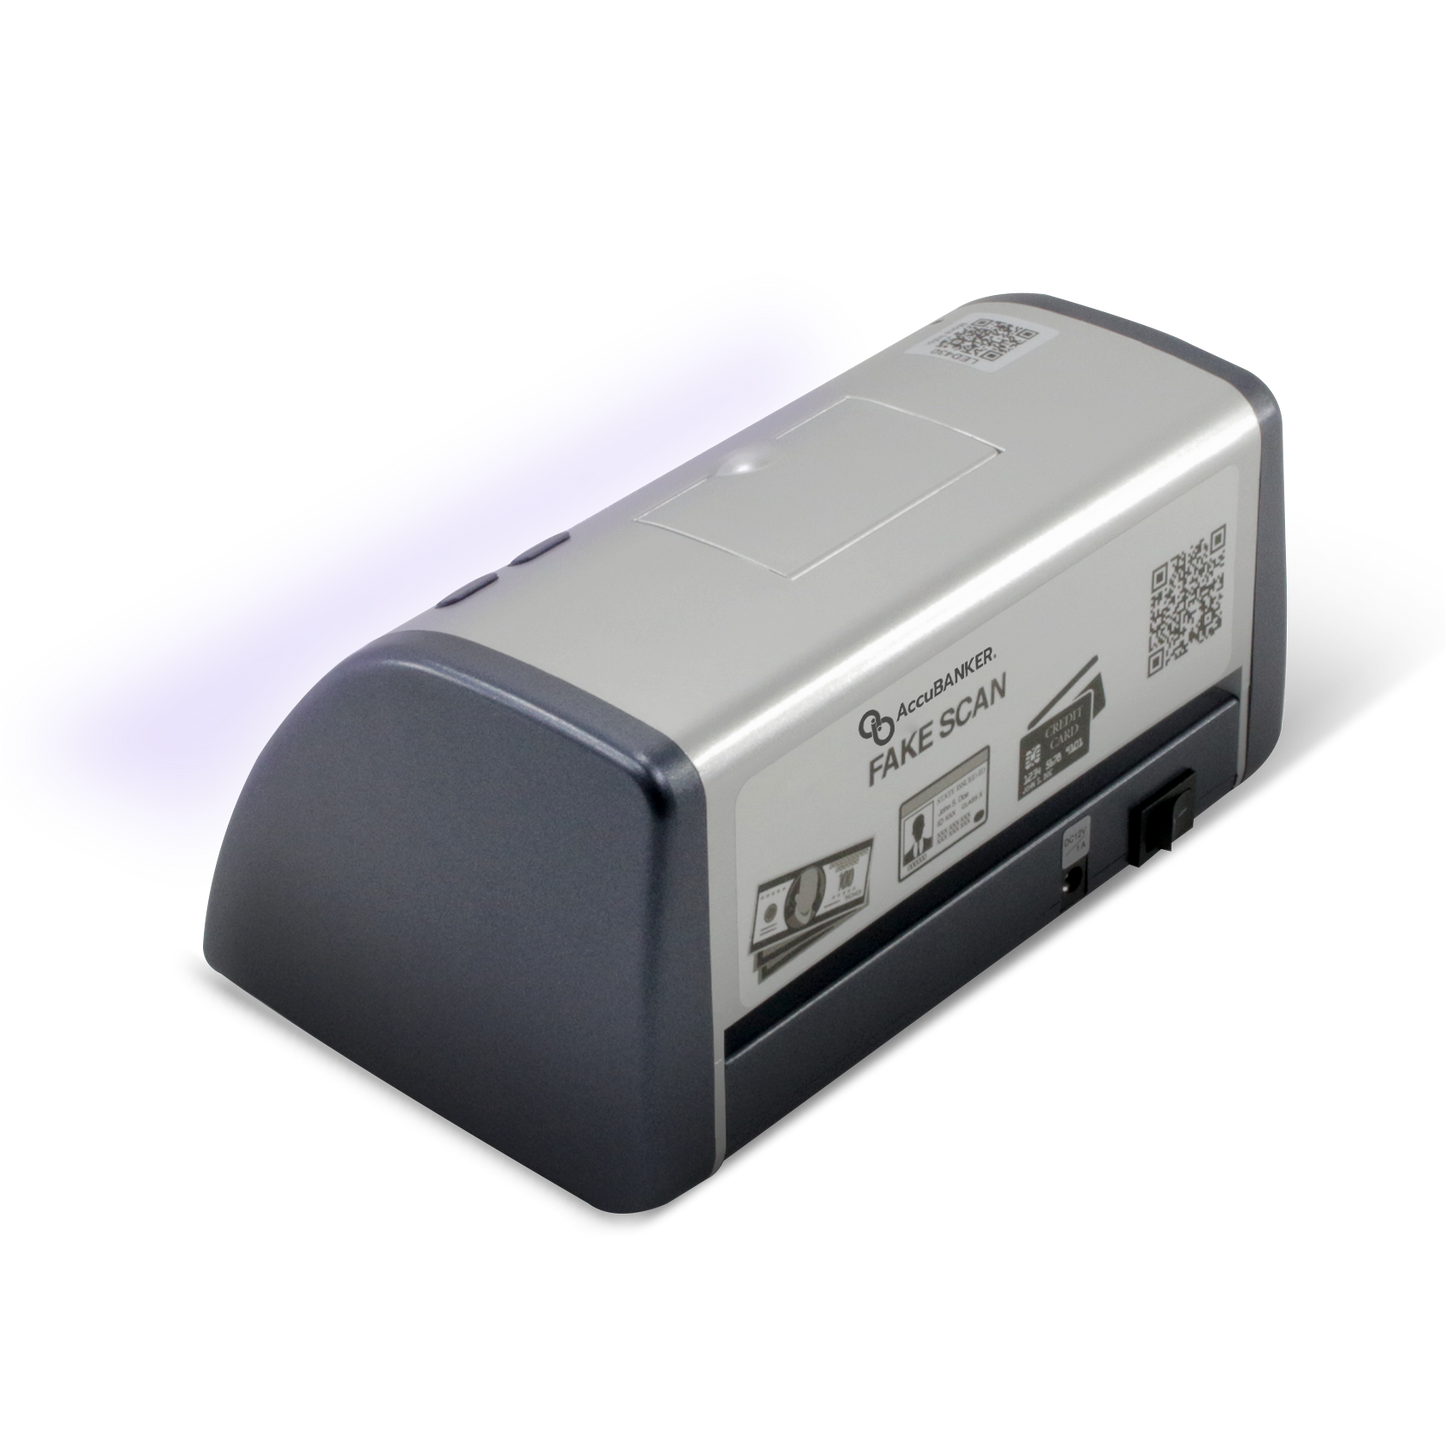 Detector AccuBanker de Billetes Falsos - Laser Print Soluciones